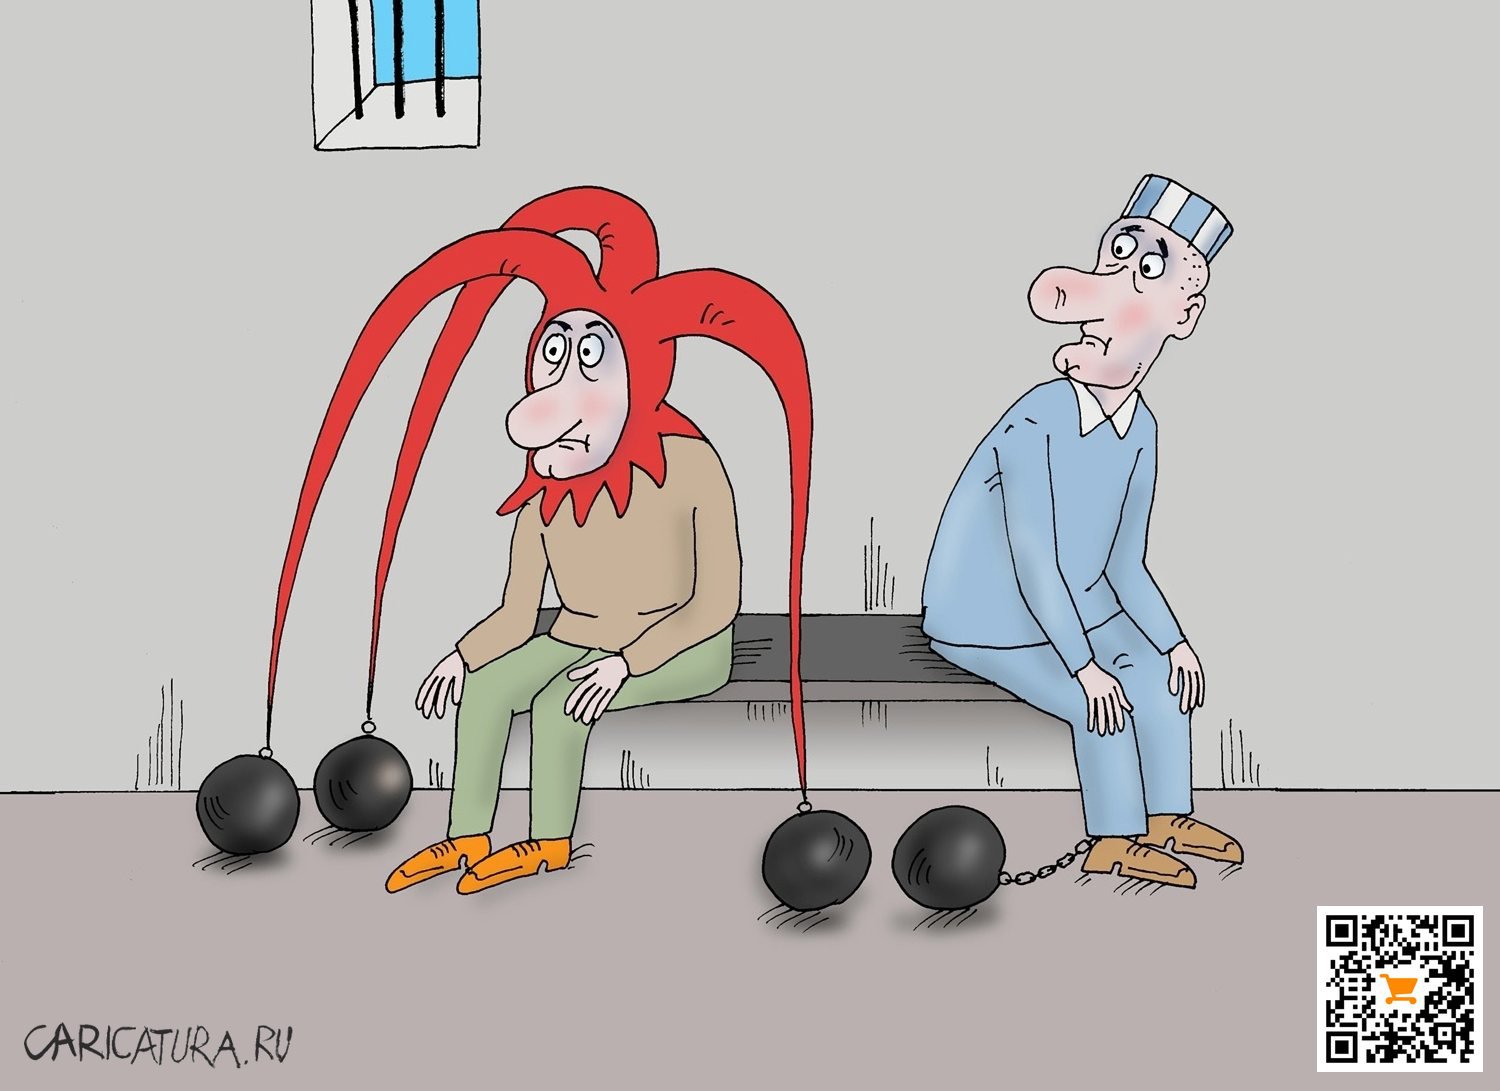 Карикатура "Шутник", Валерий Тарасенко